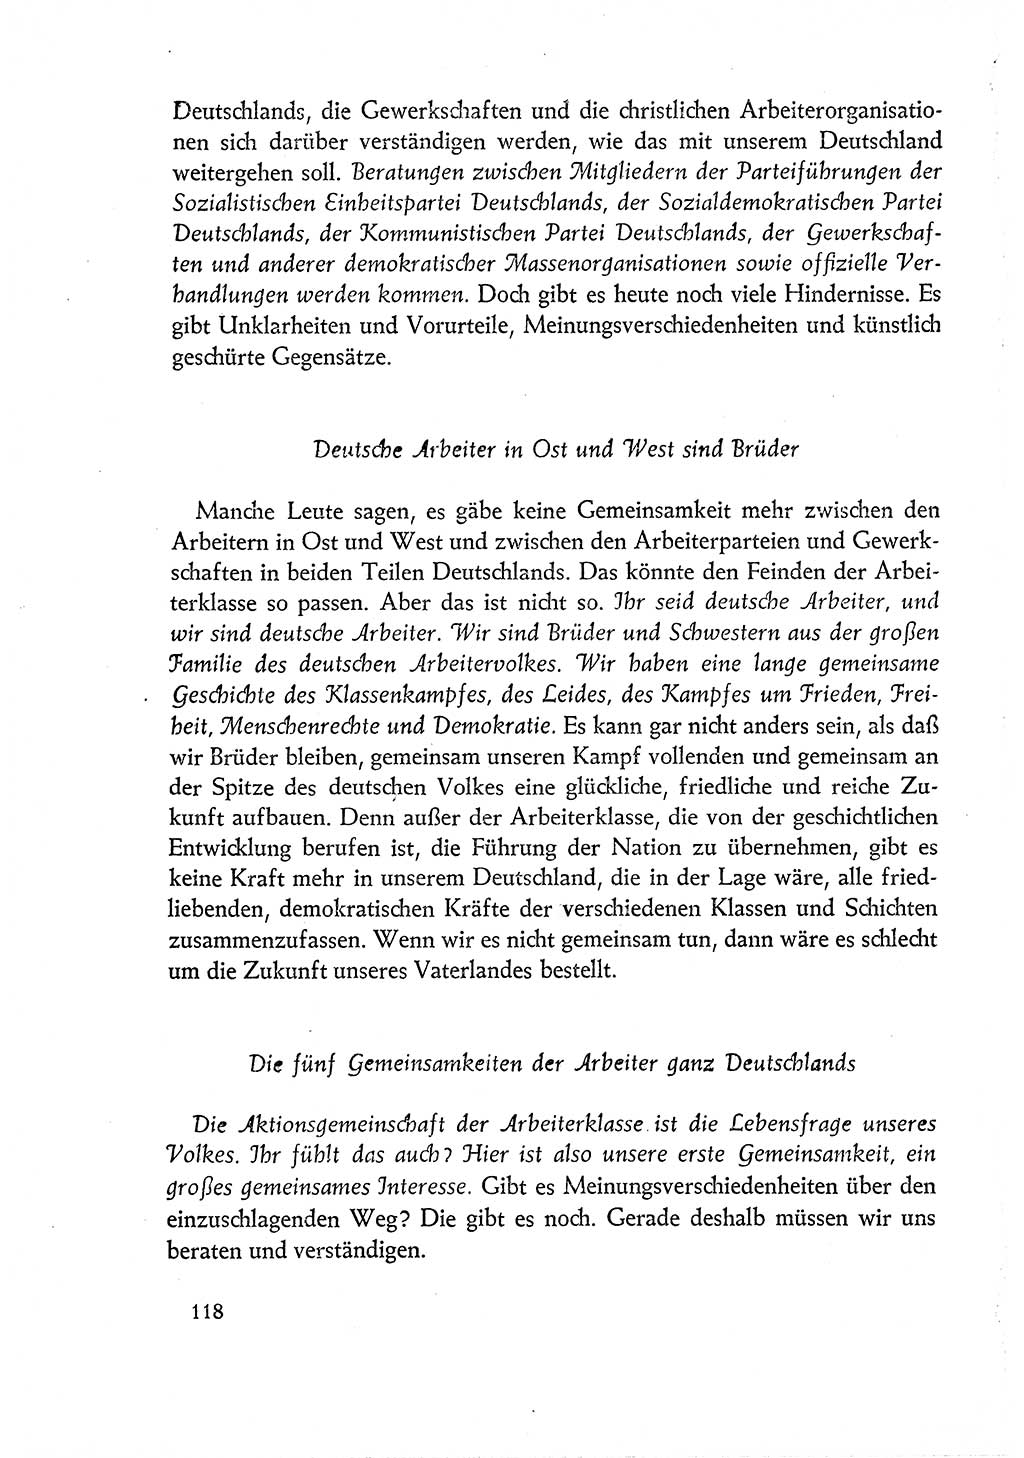 Dokumente der Sozialistischen Einheitspartei Deutschlands (SED) [Deutsche Demokratische Republik (DDR)] 1960-1961, Seite 118 (Dok. SED DDR 1960-1961, S. 118)